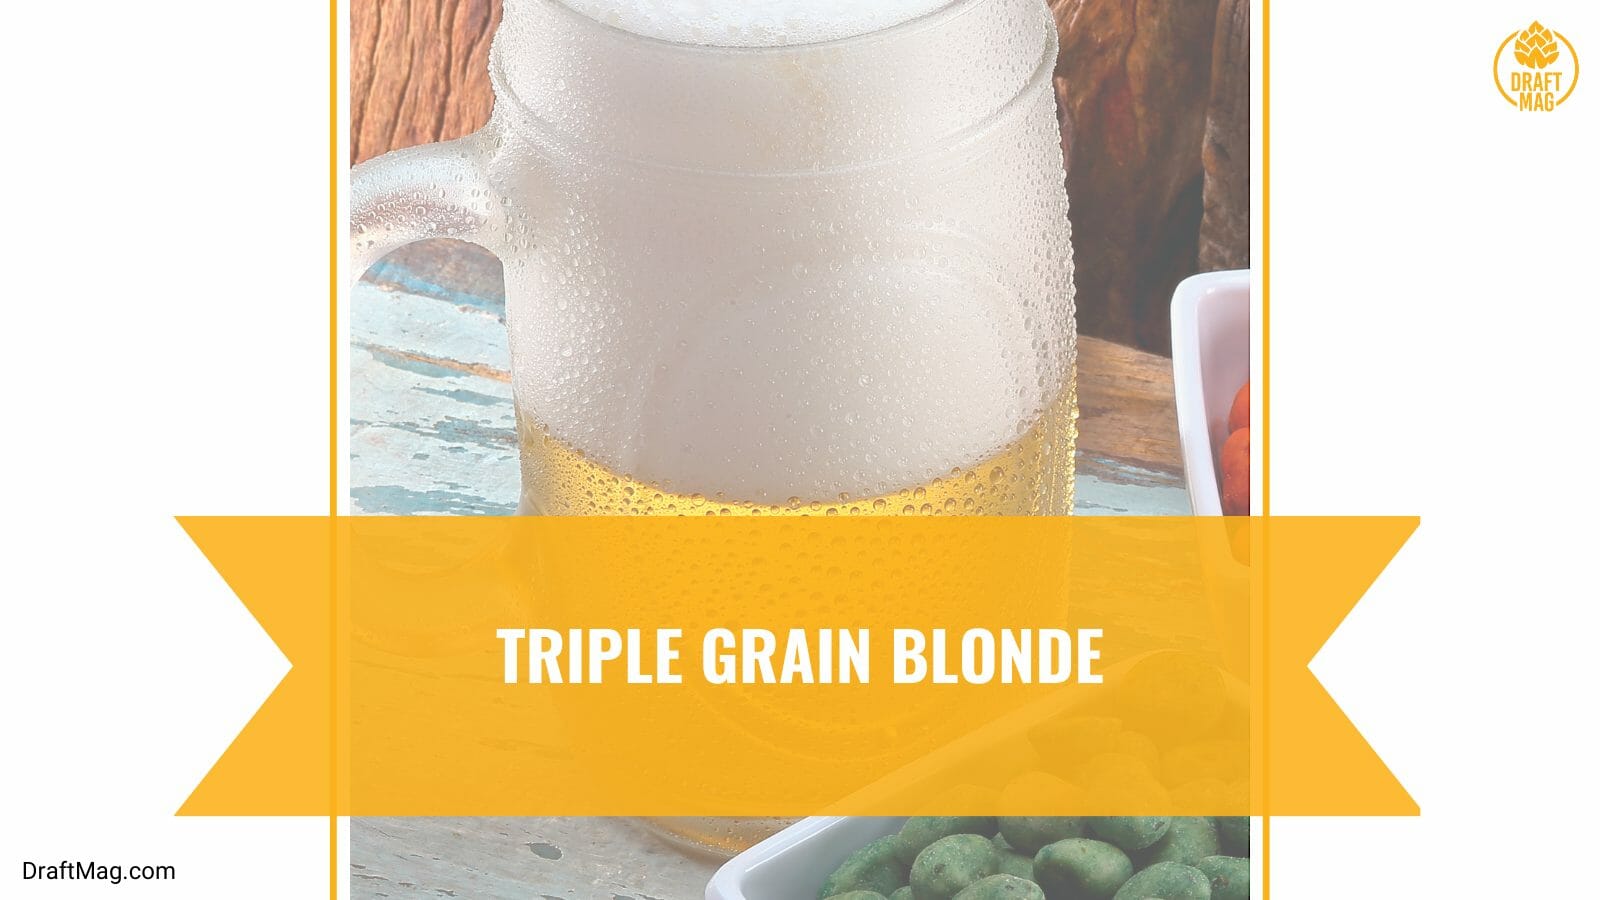 Triple grain blonde